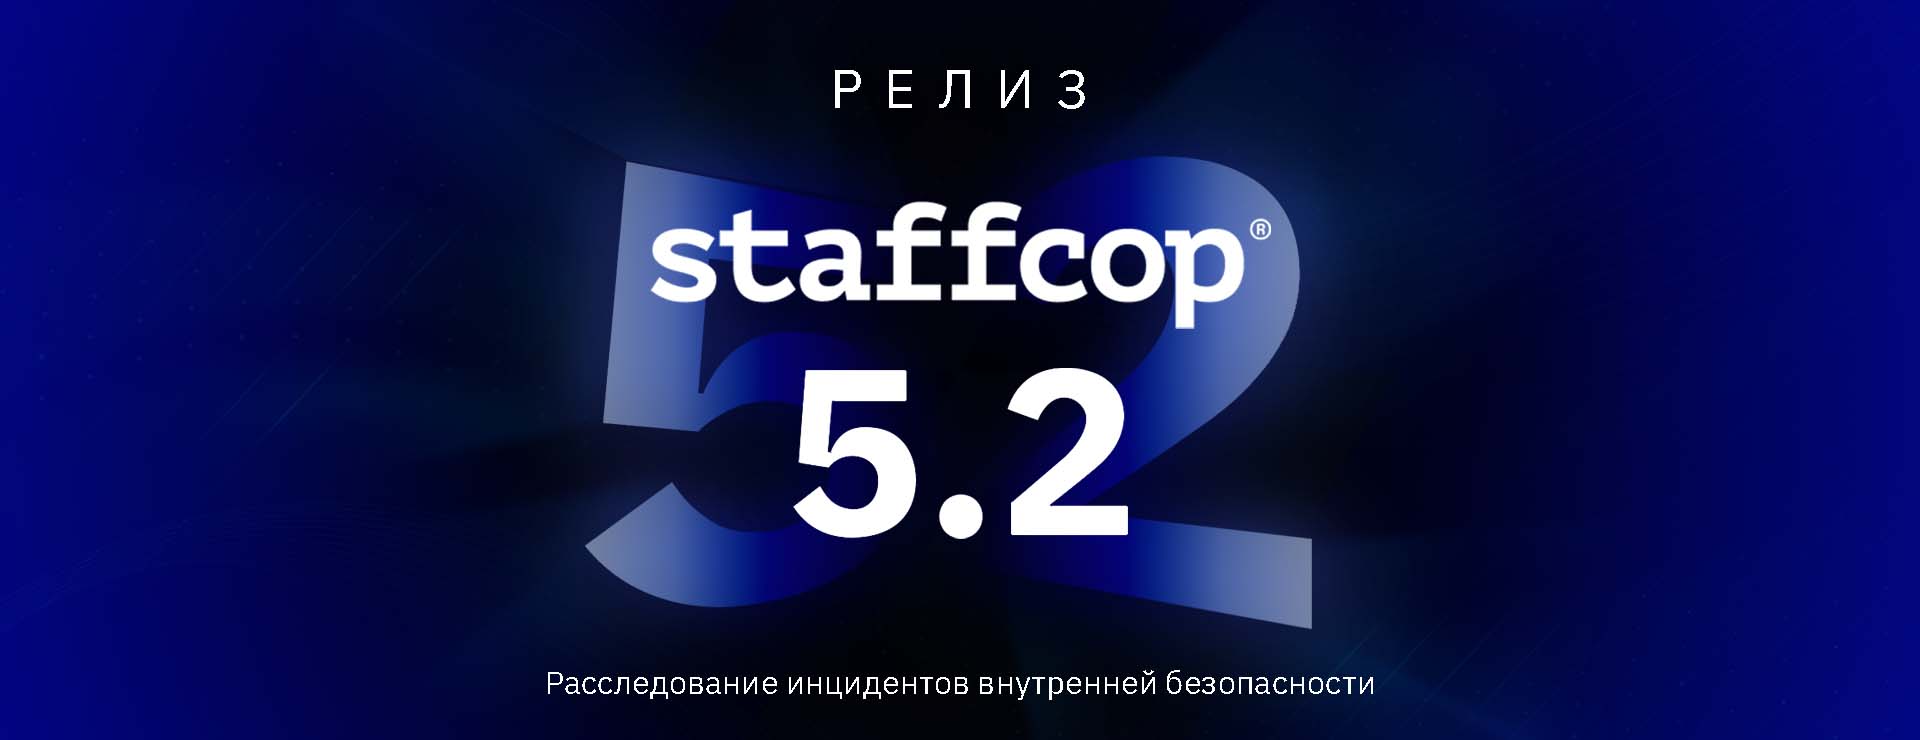 Релиз! 7 главных новинок Staffcop Enterprise 5.2